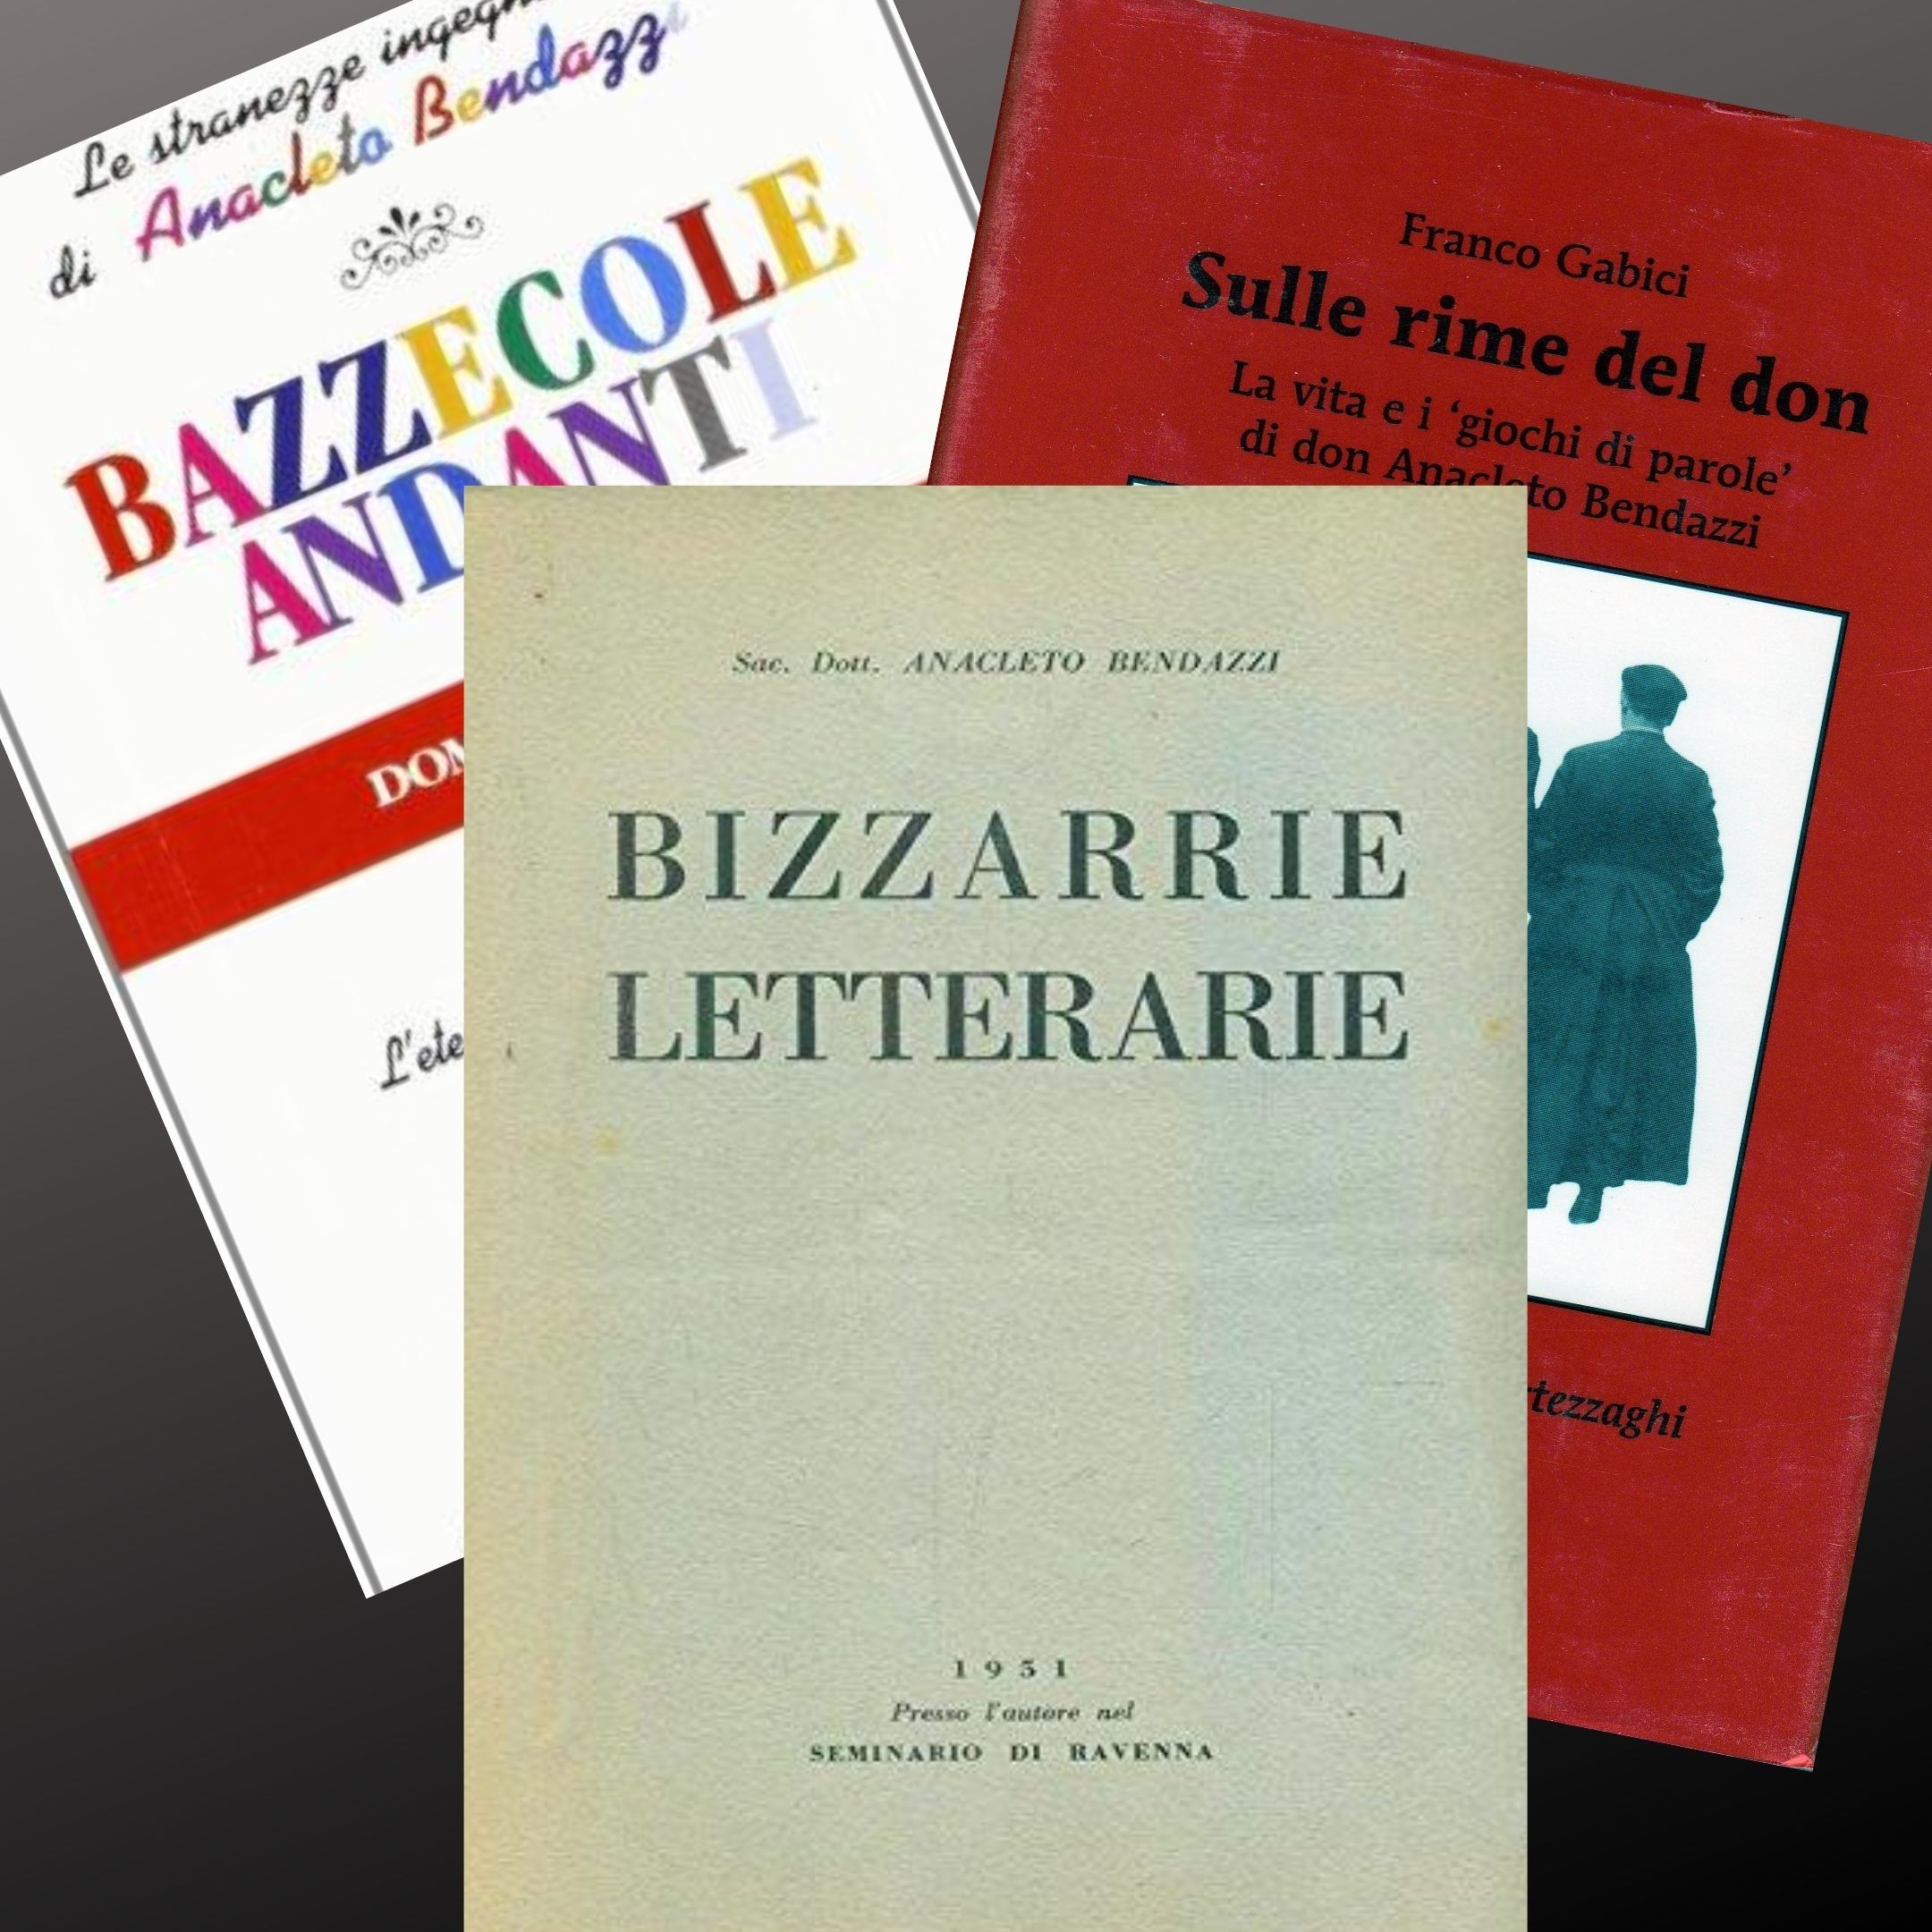 Le stupefacenti “Bizzarrie letterarie” di Don Anacleto Bendazzi